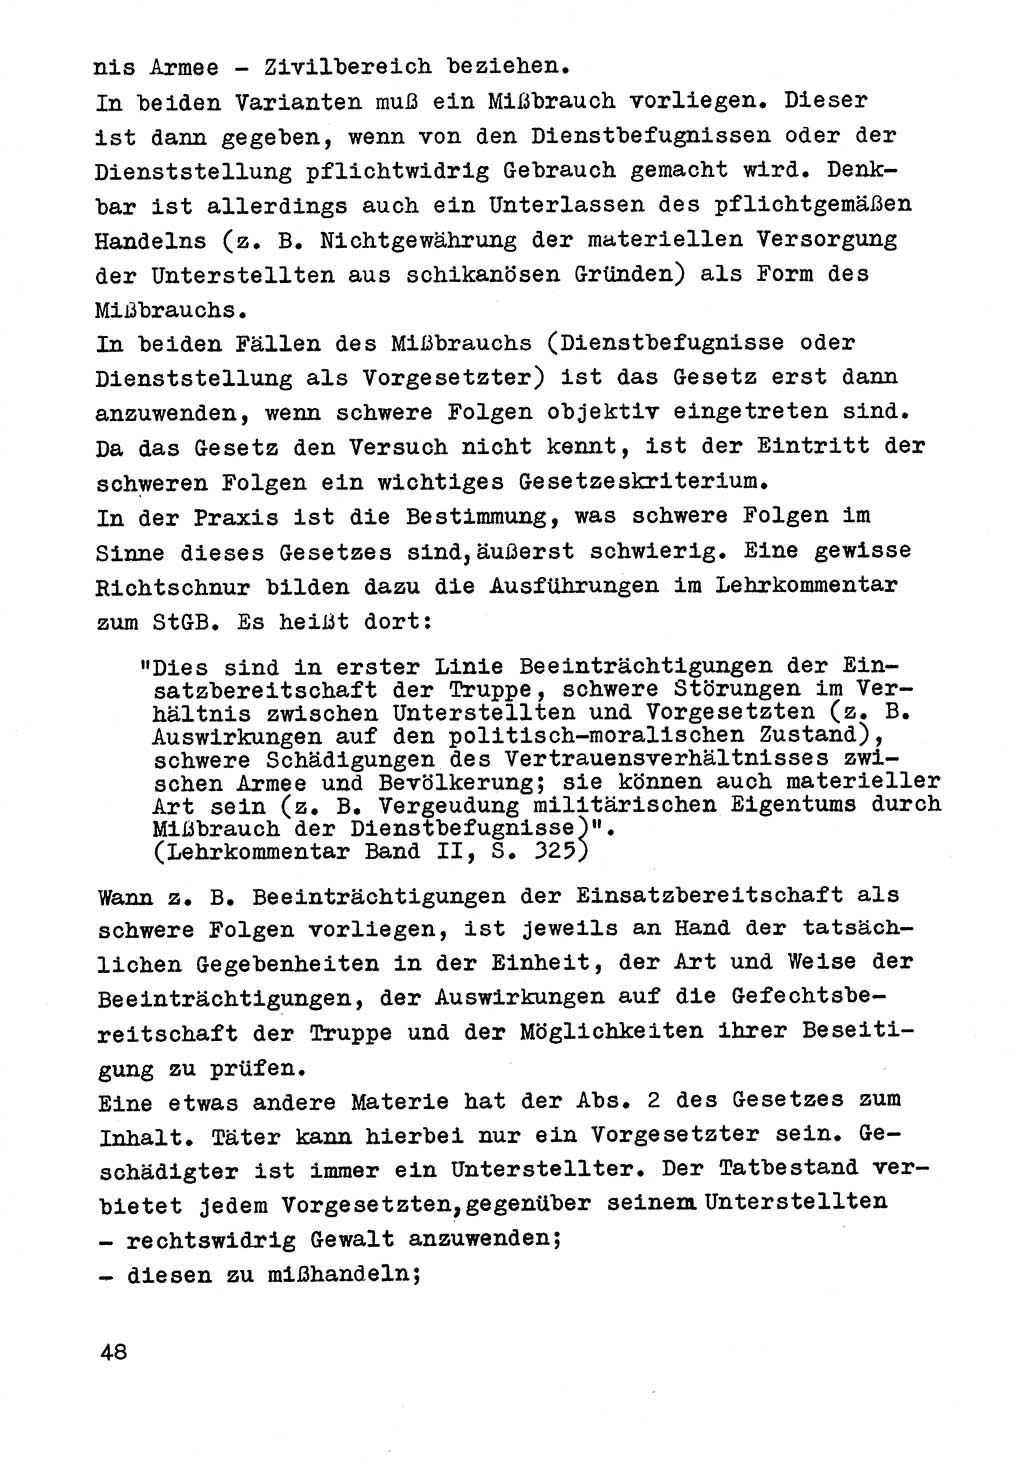 Strafrecht der DDR (Deutsche Demokratische Republik), Besonderer Teil, Lehrmaterial, Heft 9 1969, Seite 48 (Strafr. DDR BT Lehrmat. H. 9 1969, S. 48)